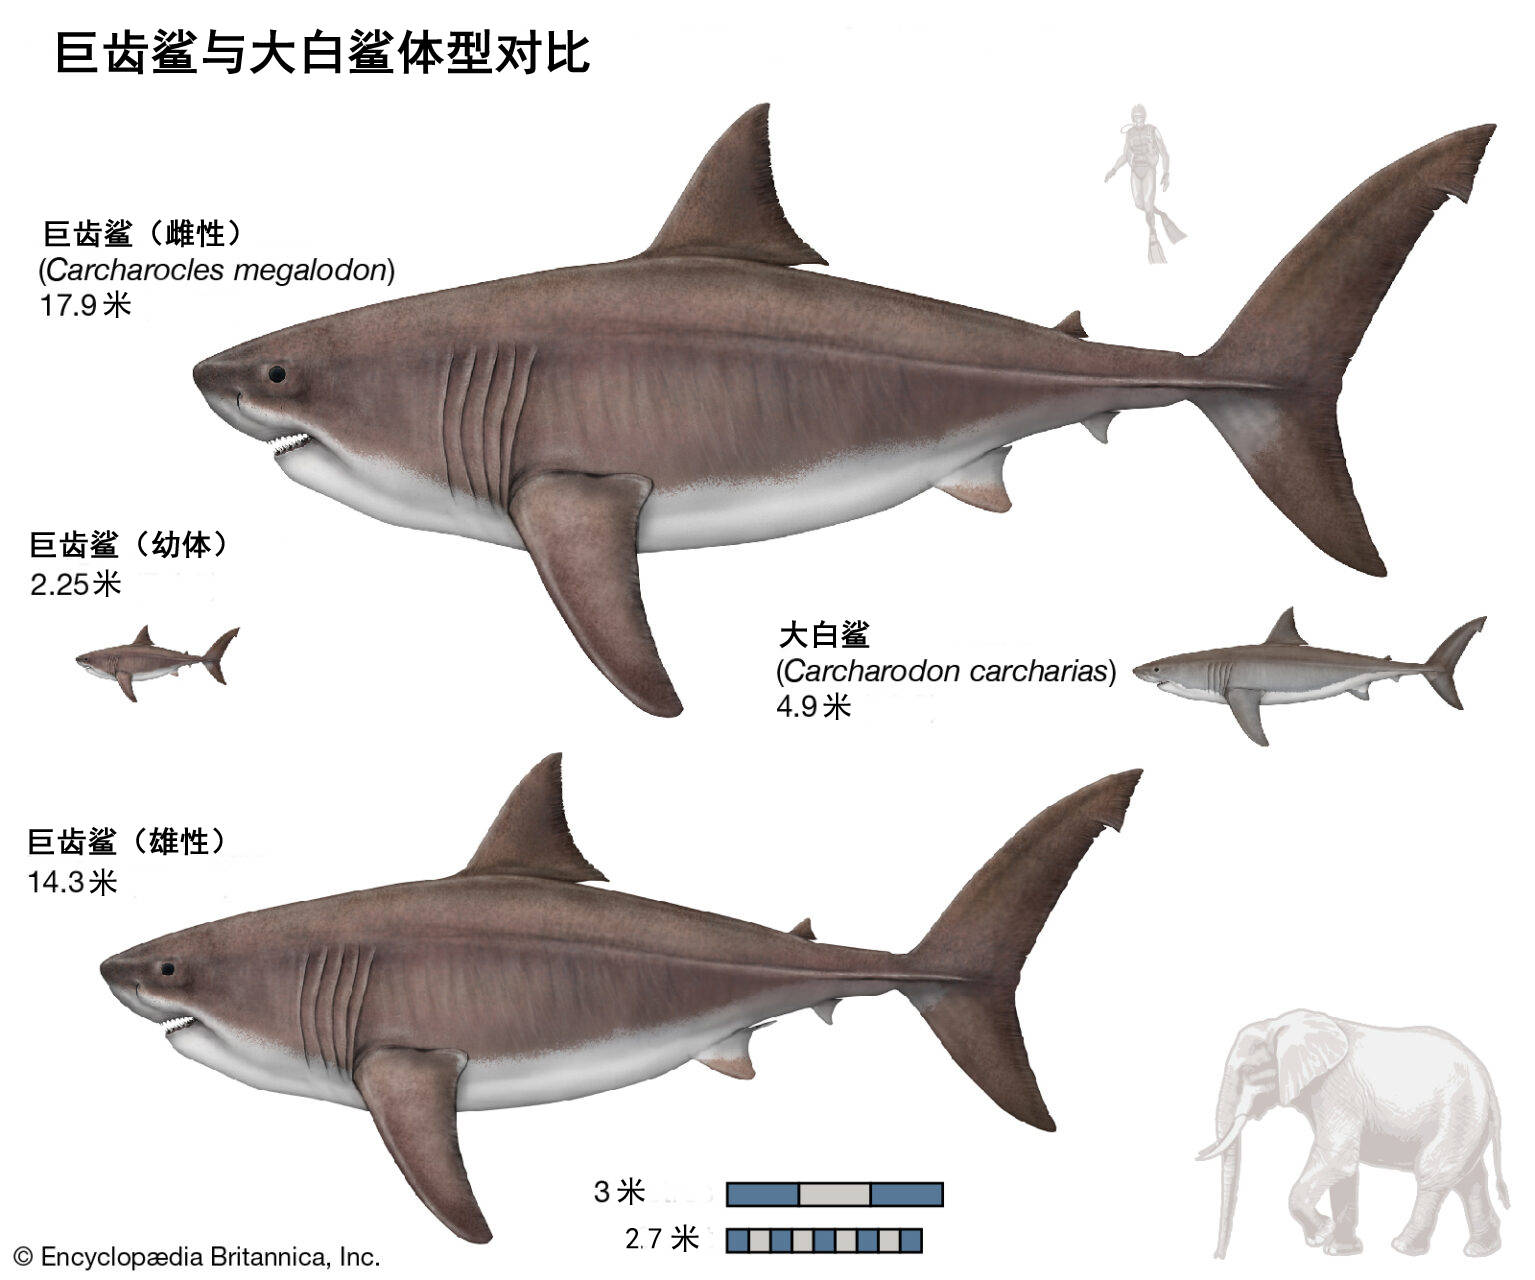 《巨齿鲨》曝全新海报剧照 “海底侏罗纪”初露端倪-国际在线